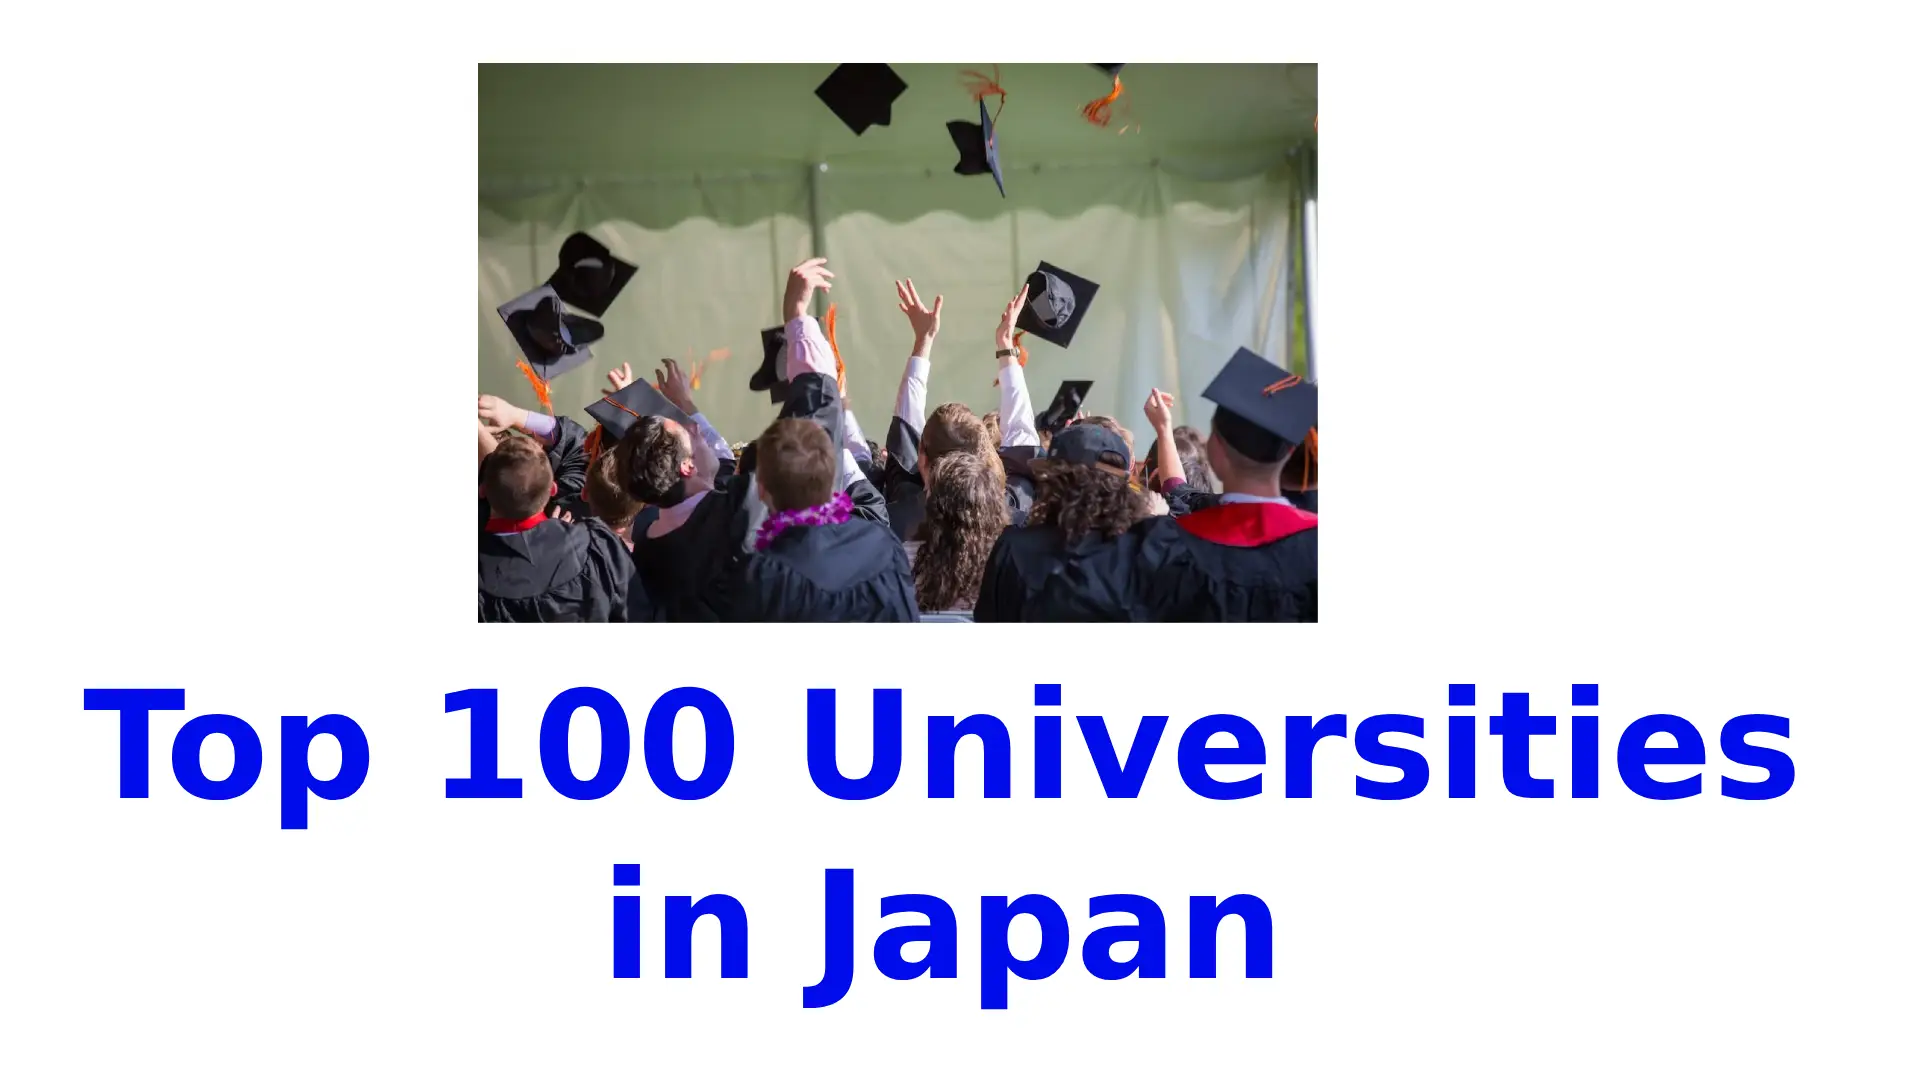 Top 100 Universities in Japan